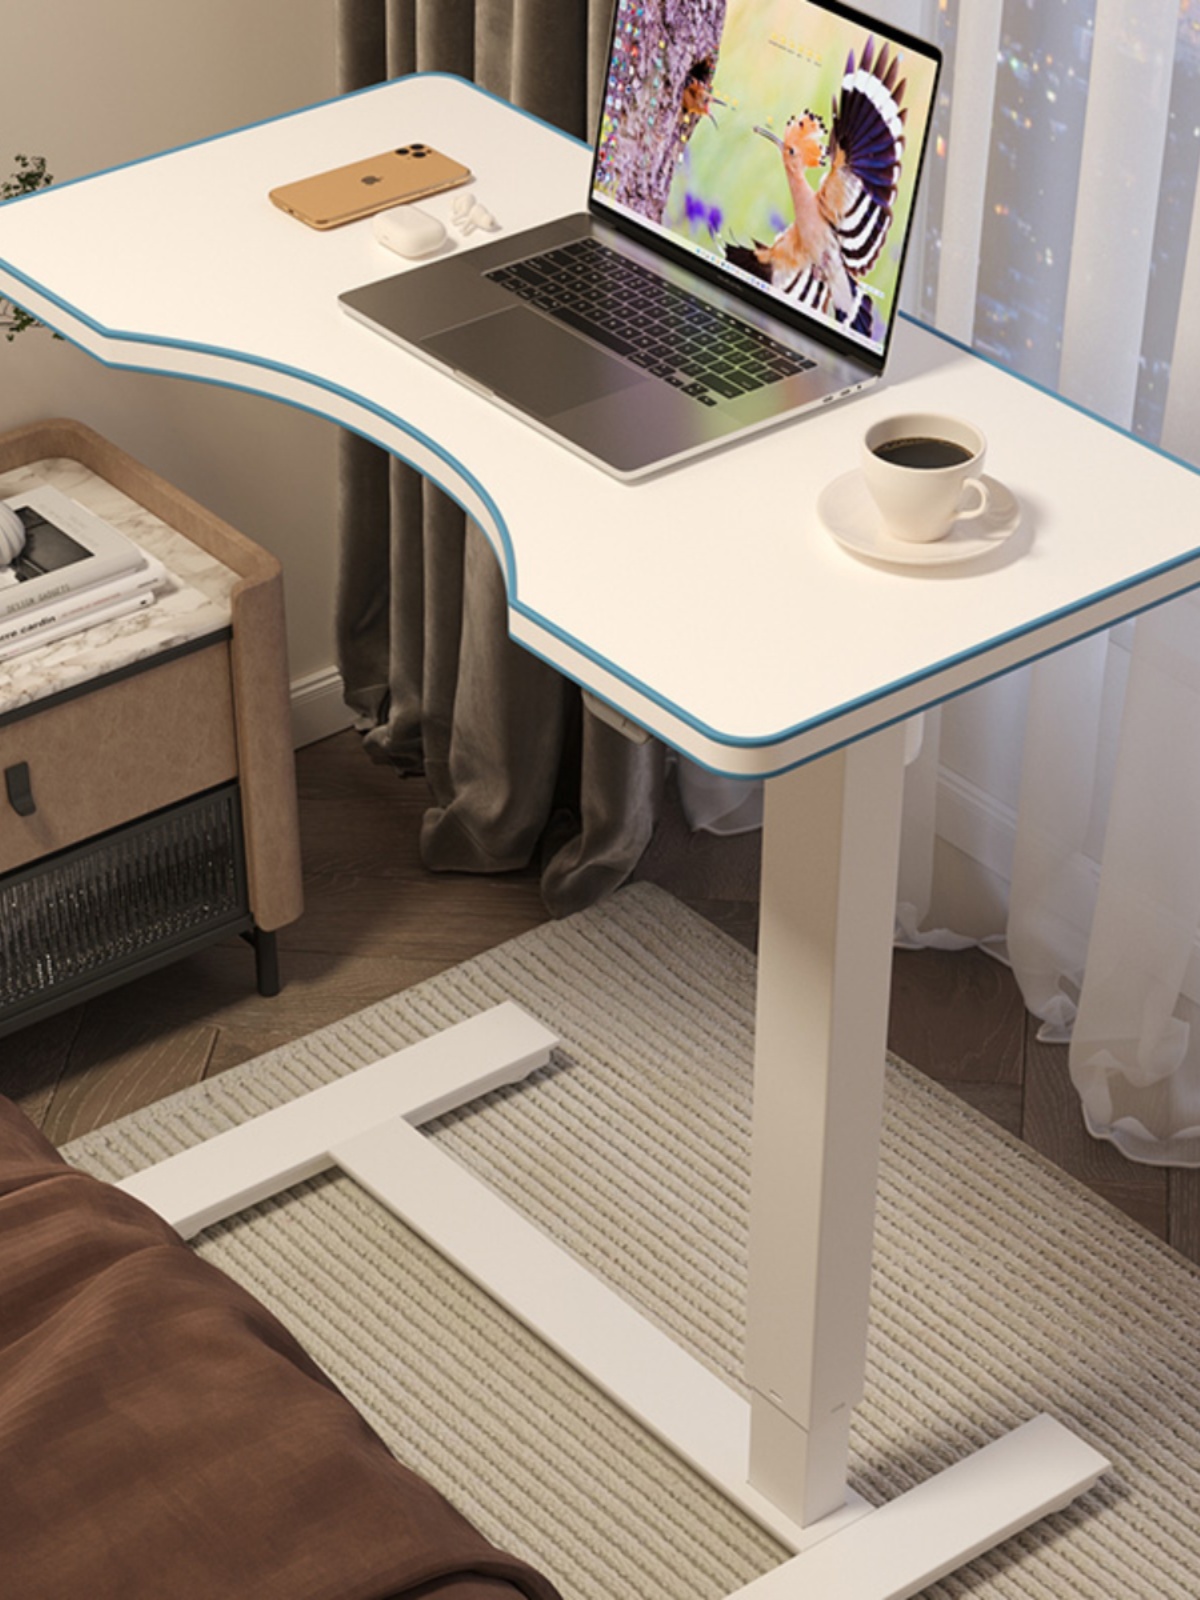 库移动电动升降桌可充电可折叠床边桌餐边桌卧室沙发电脑桌书桌厂